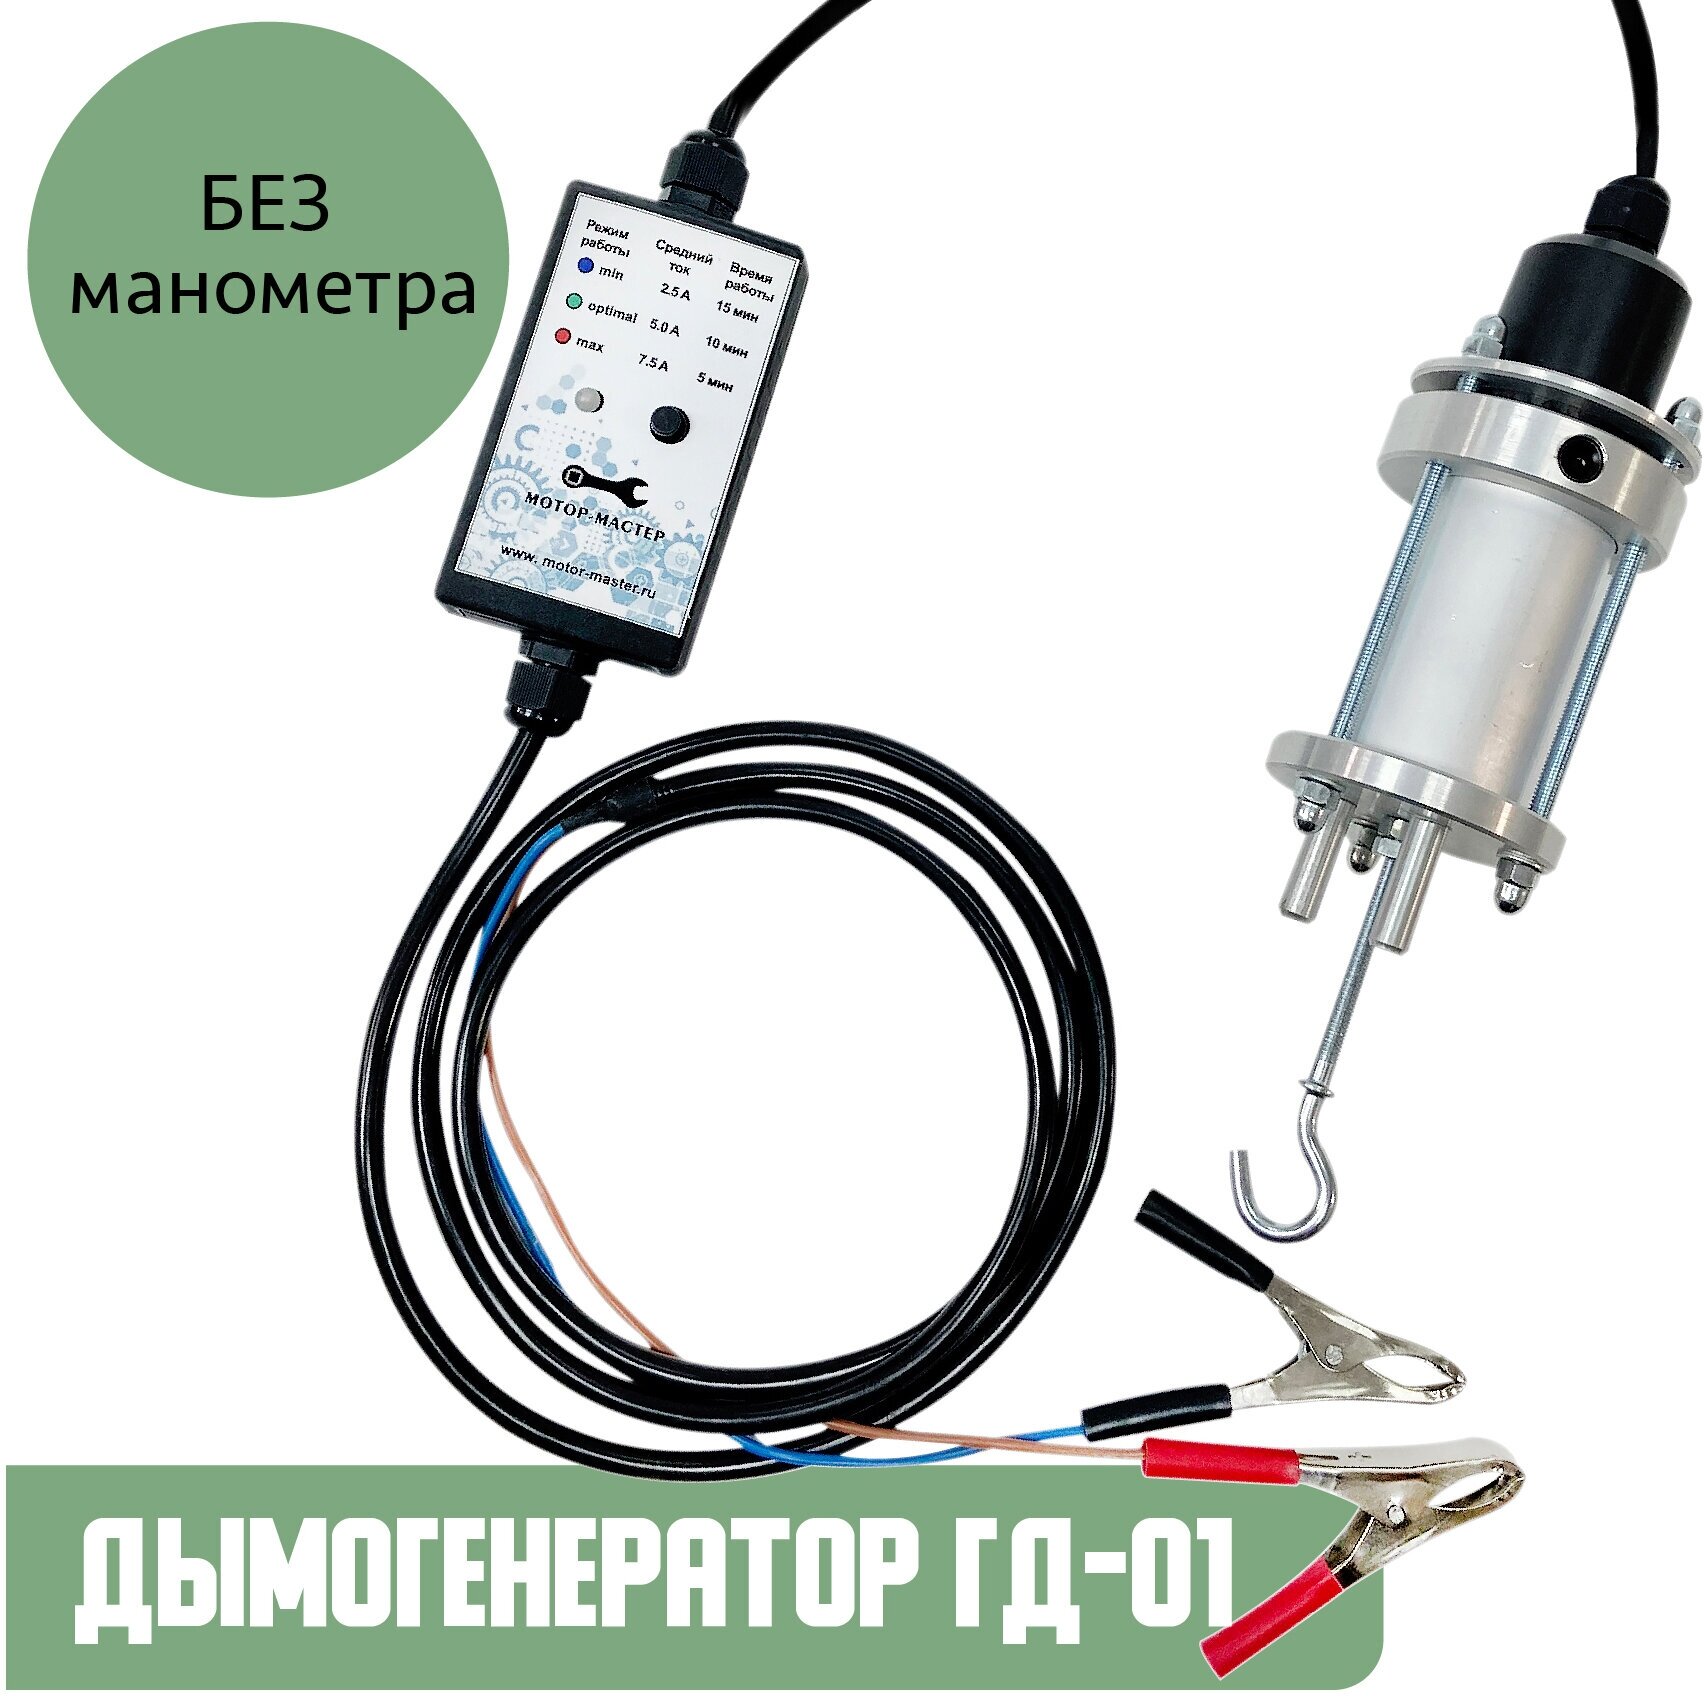 Дымогенератор ГД-01 без манометра для авто от Мотор-Мастер